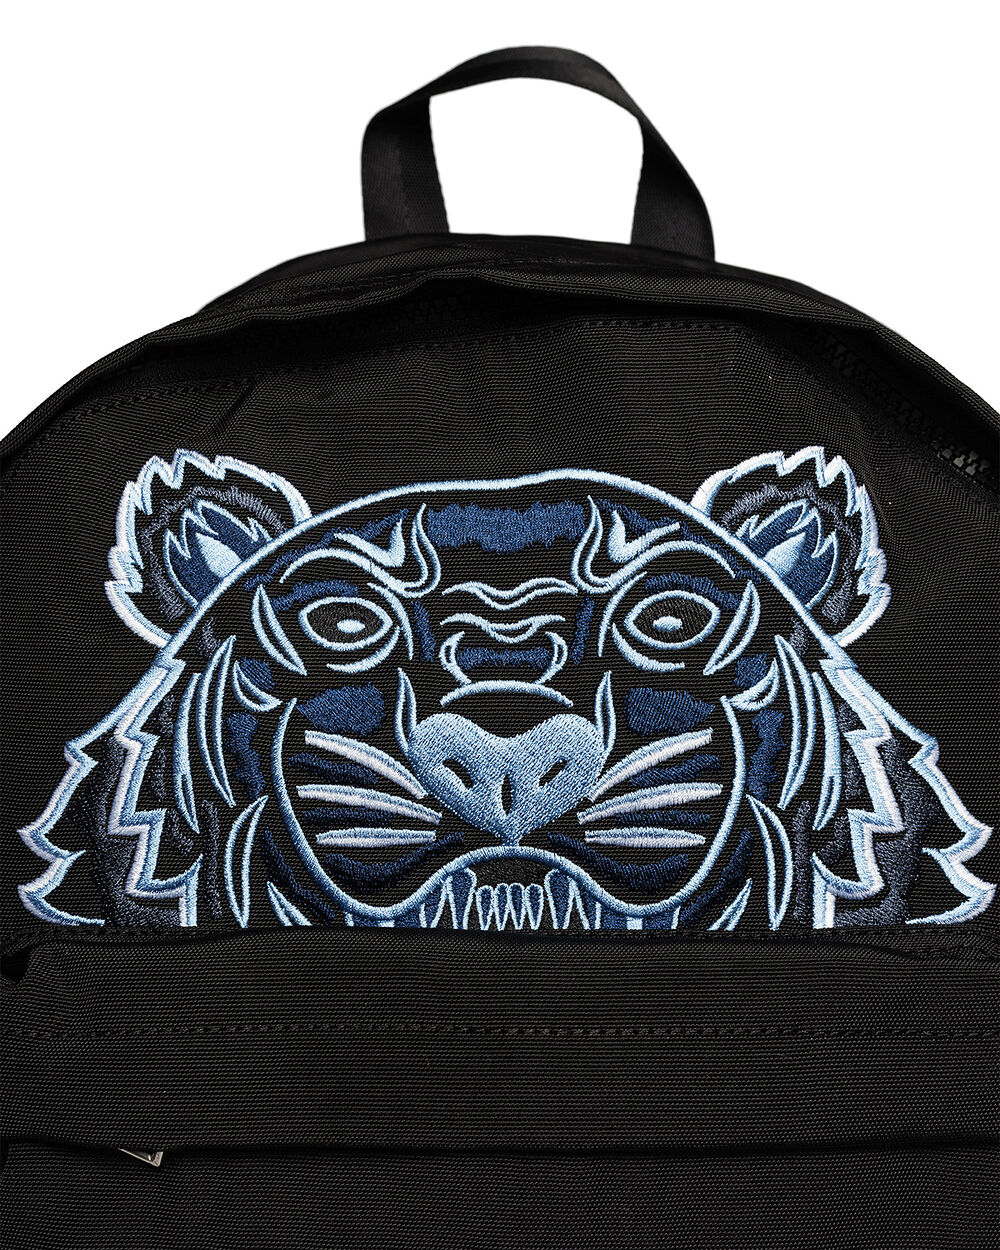 Kenzo Backpack Black Ryggsäckar | Märkeskläder på Zoovillage.com